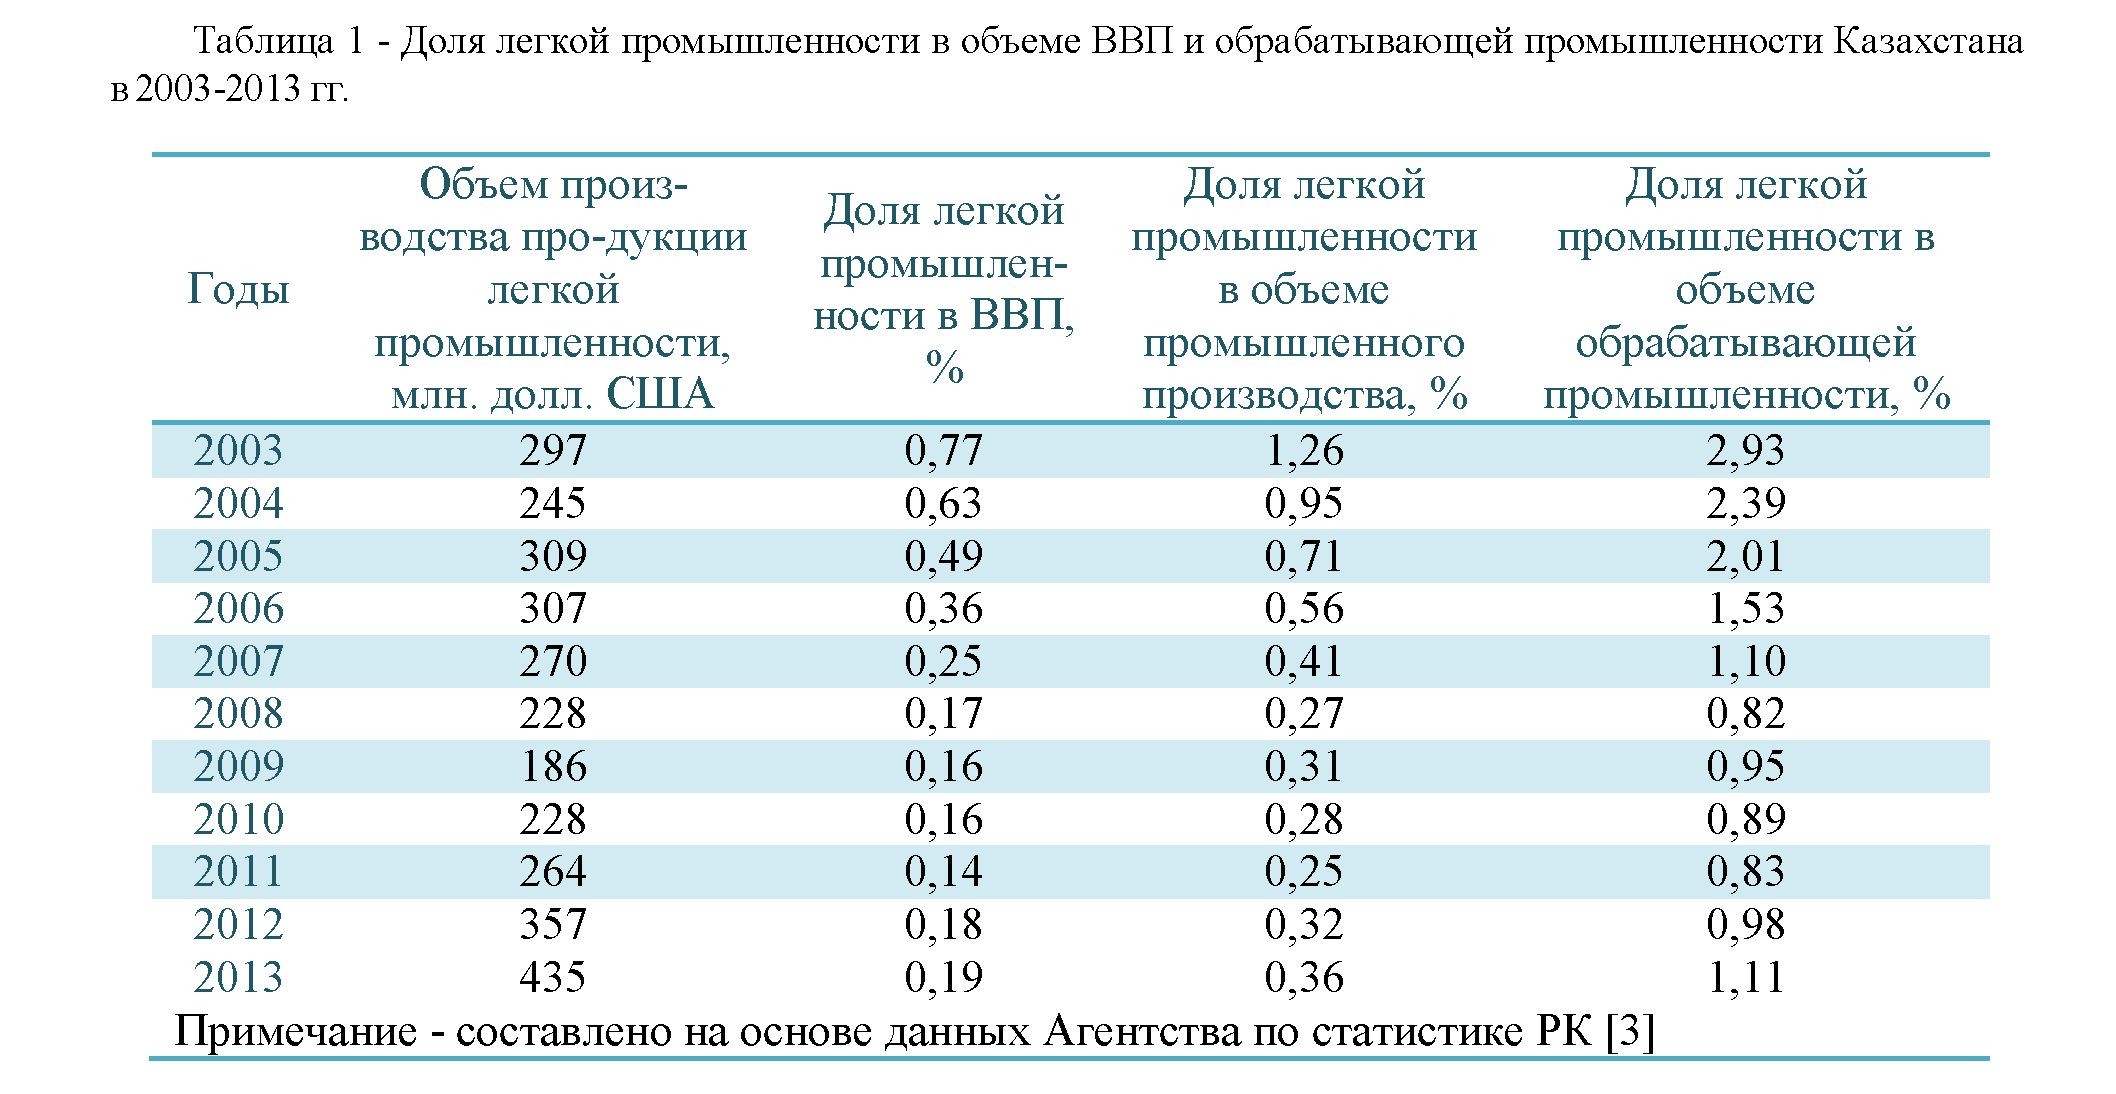 Кредитное взаимодействие банковской системы и реального сектора экономики (на примере легкой промышленности республики Казахстан)